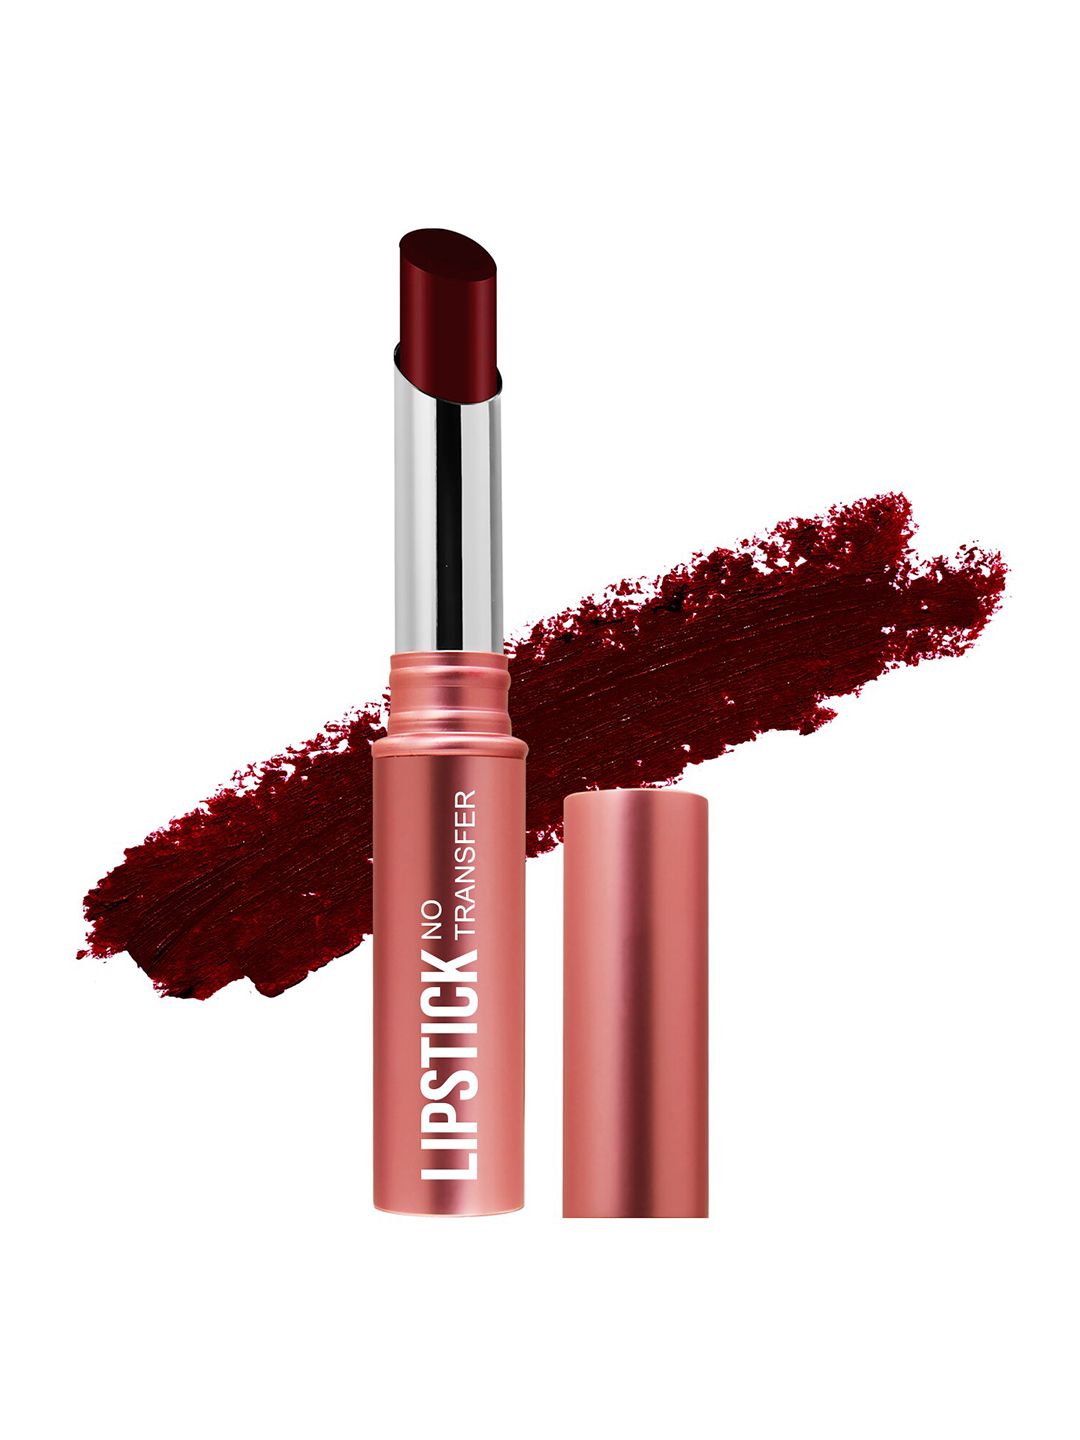 Magic Colour No Transfer Matte Lipstick - Burgundy Rush 19 Price in India